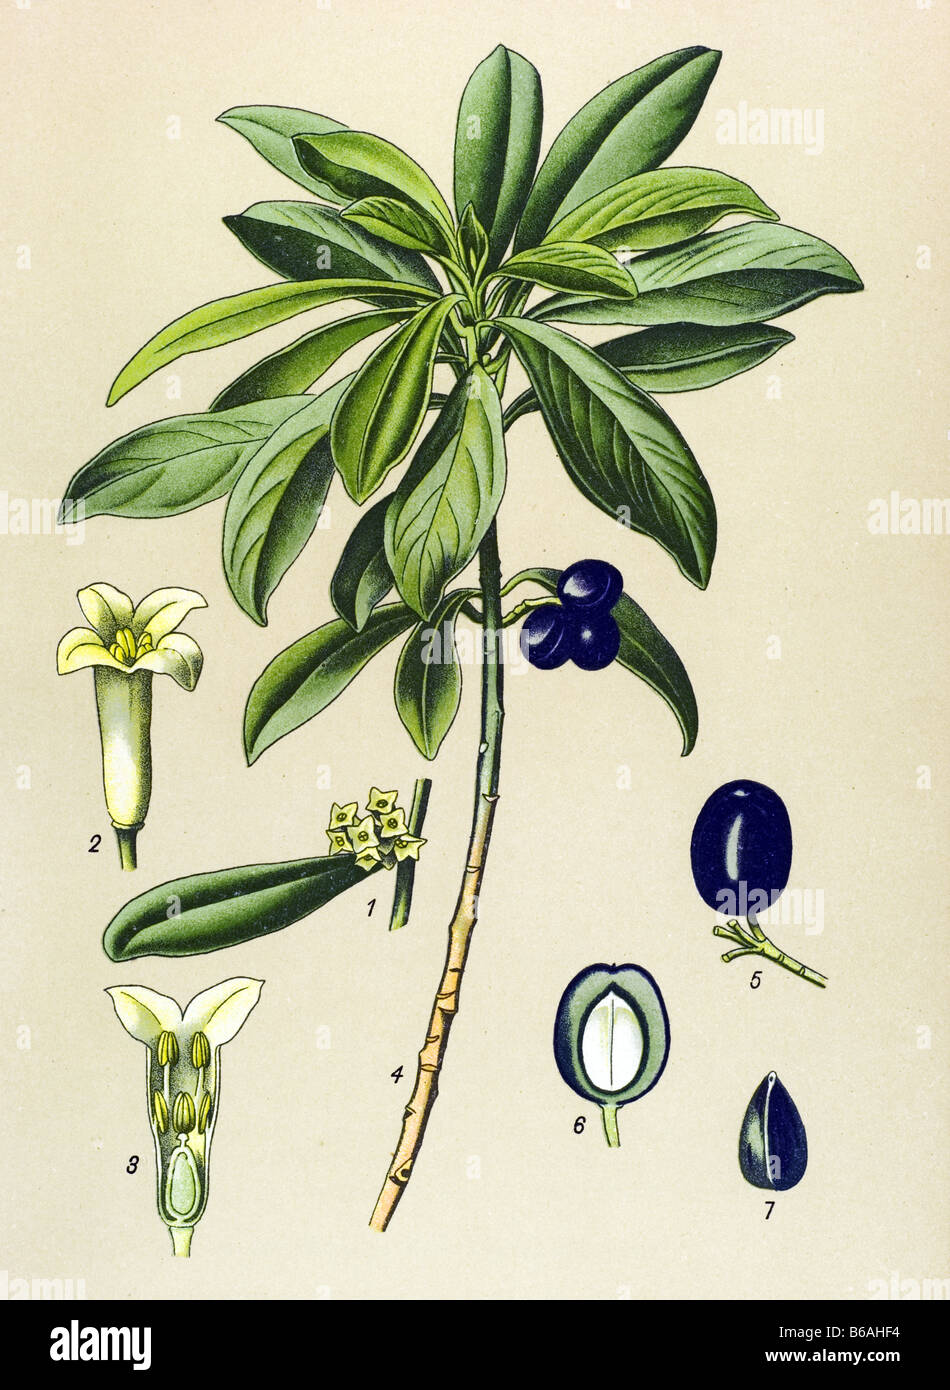 Spurge-laurel, Daphne Laureola poisonous plants illustrations Stock Photo